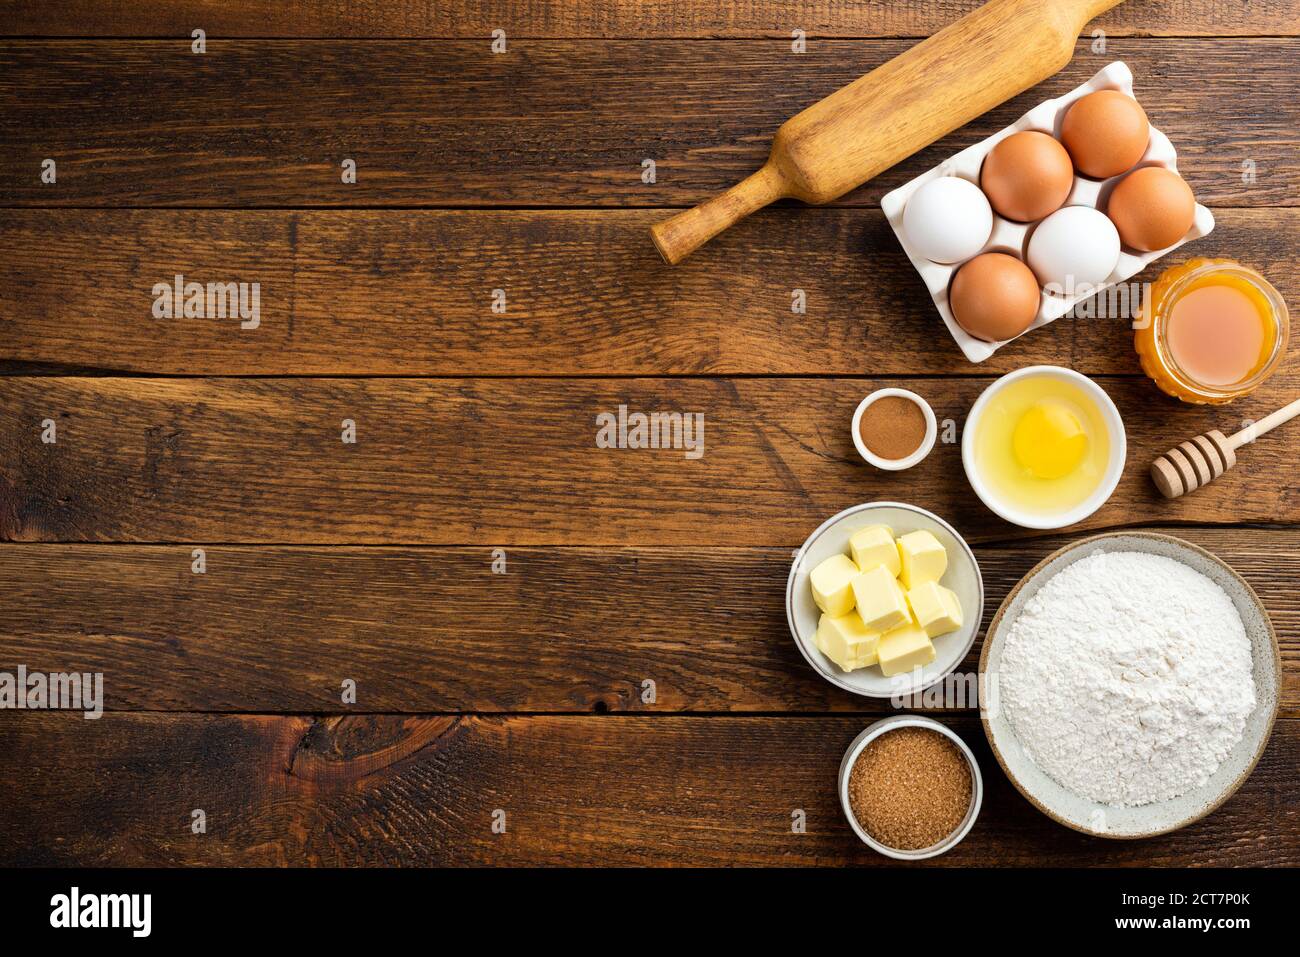 Cuisson des ingrédients sur fond de table en bois. Œufs de farine beurre sucre et autres ingrédients de pâtisserie sur le bois. Espace de copie de la vue de dessus Banque D'Images